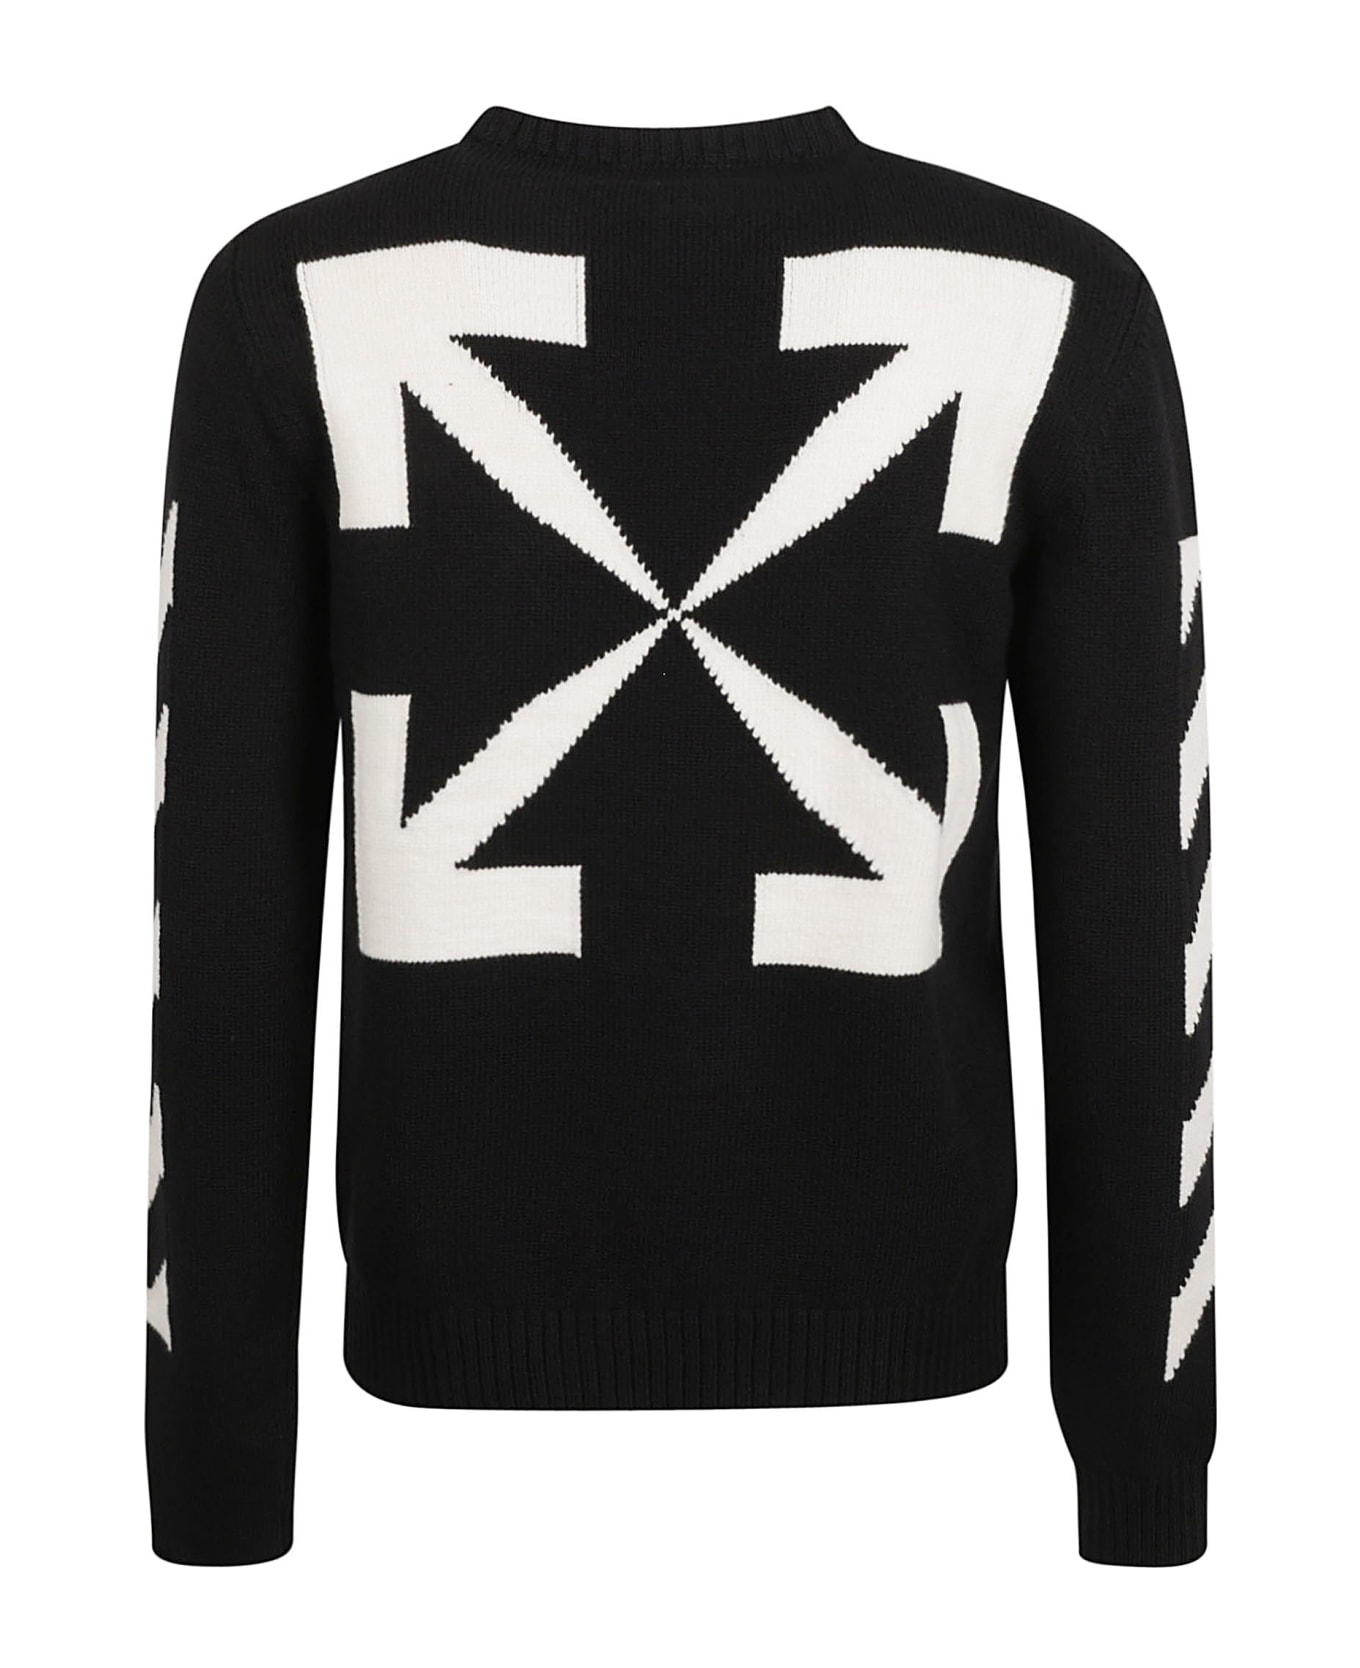 Off-White Diag Arrow Knit Crewneck Sweater - Black/white